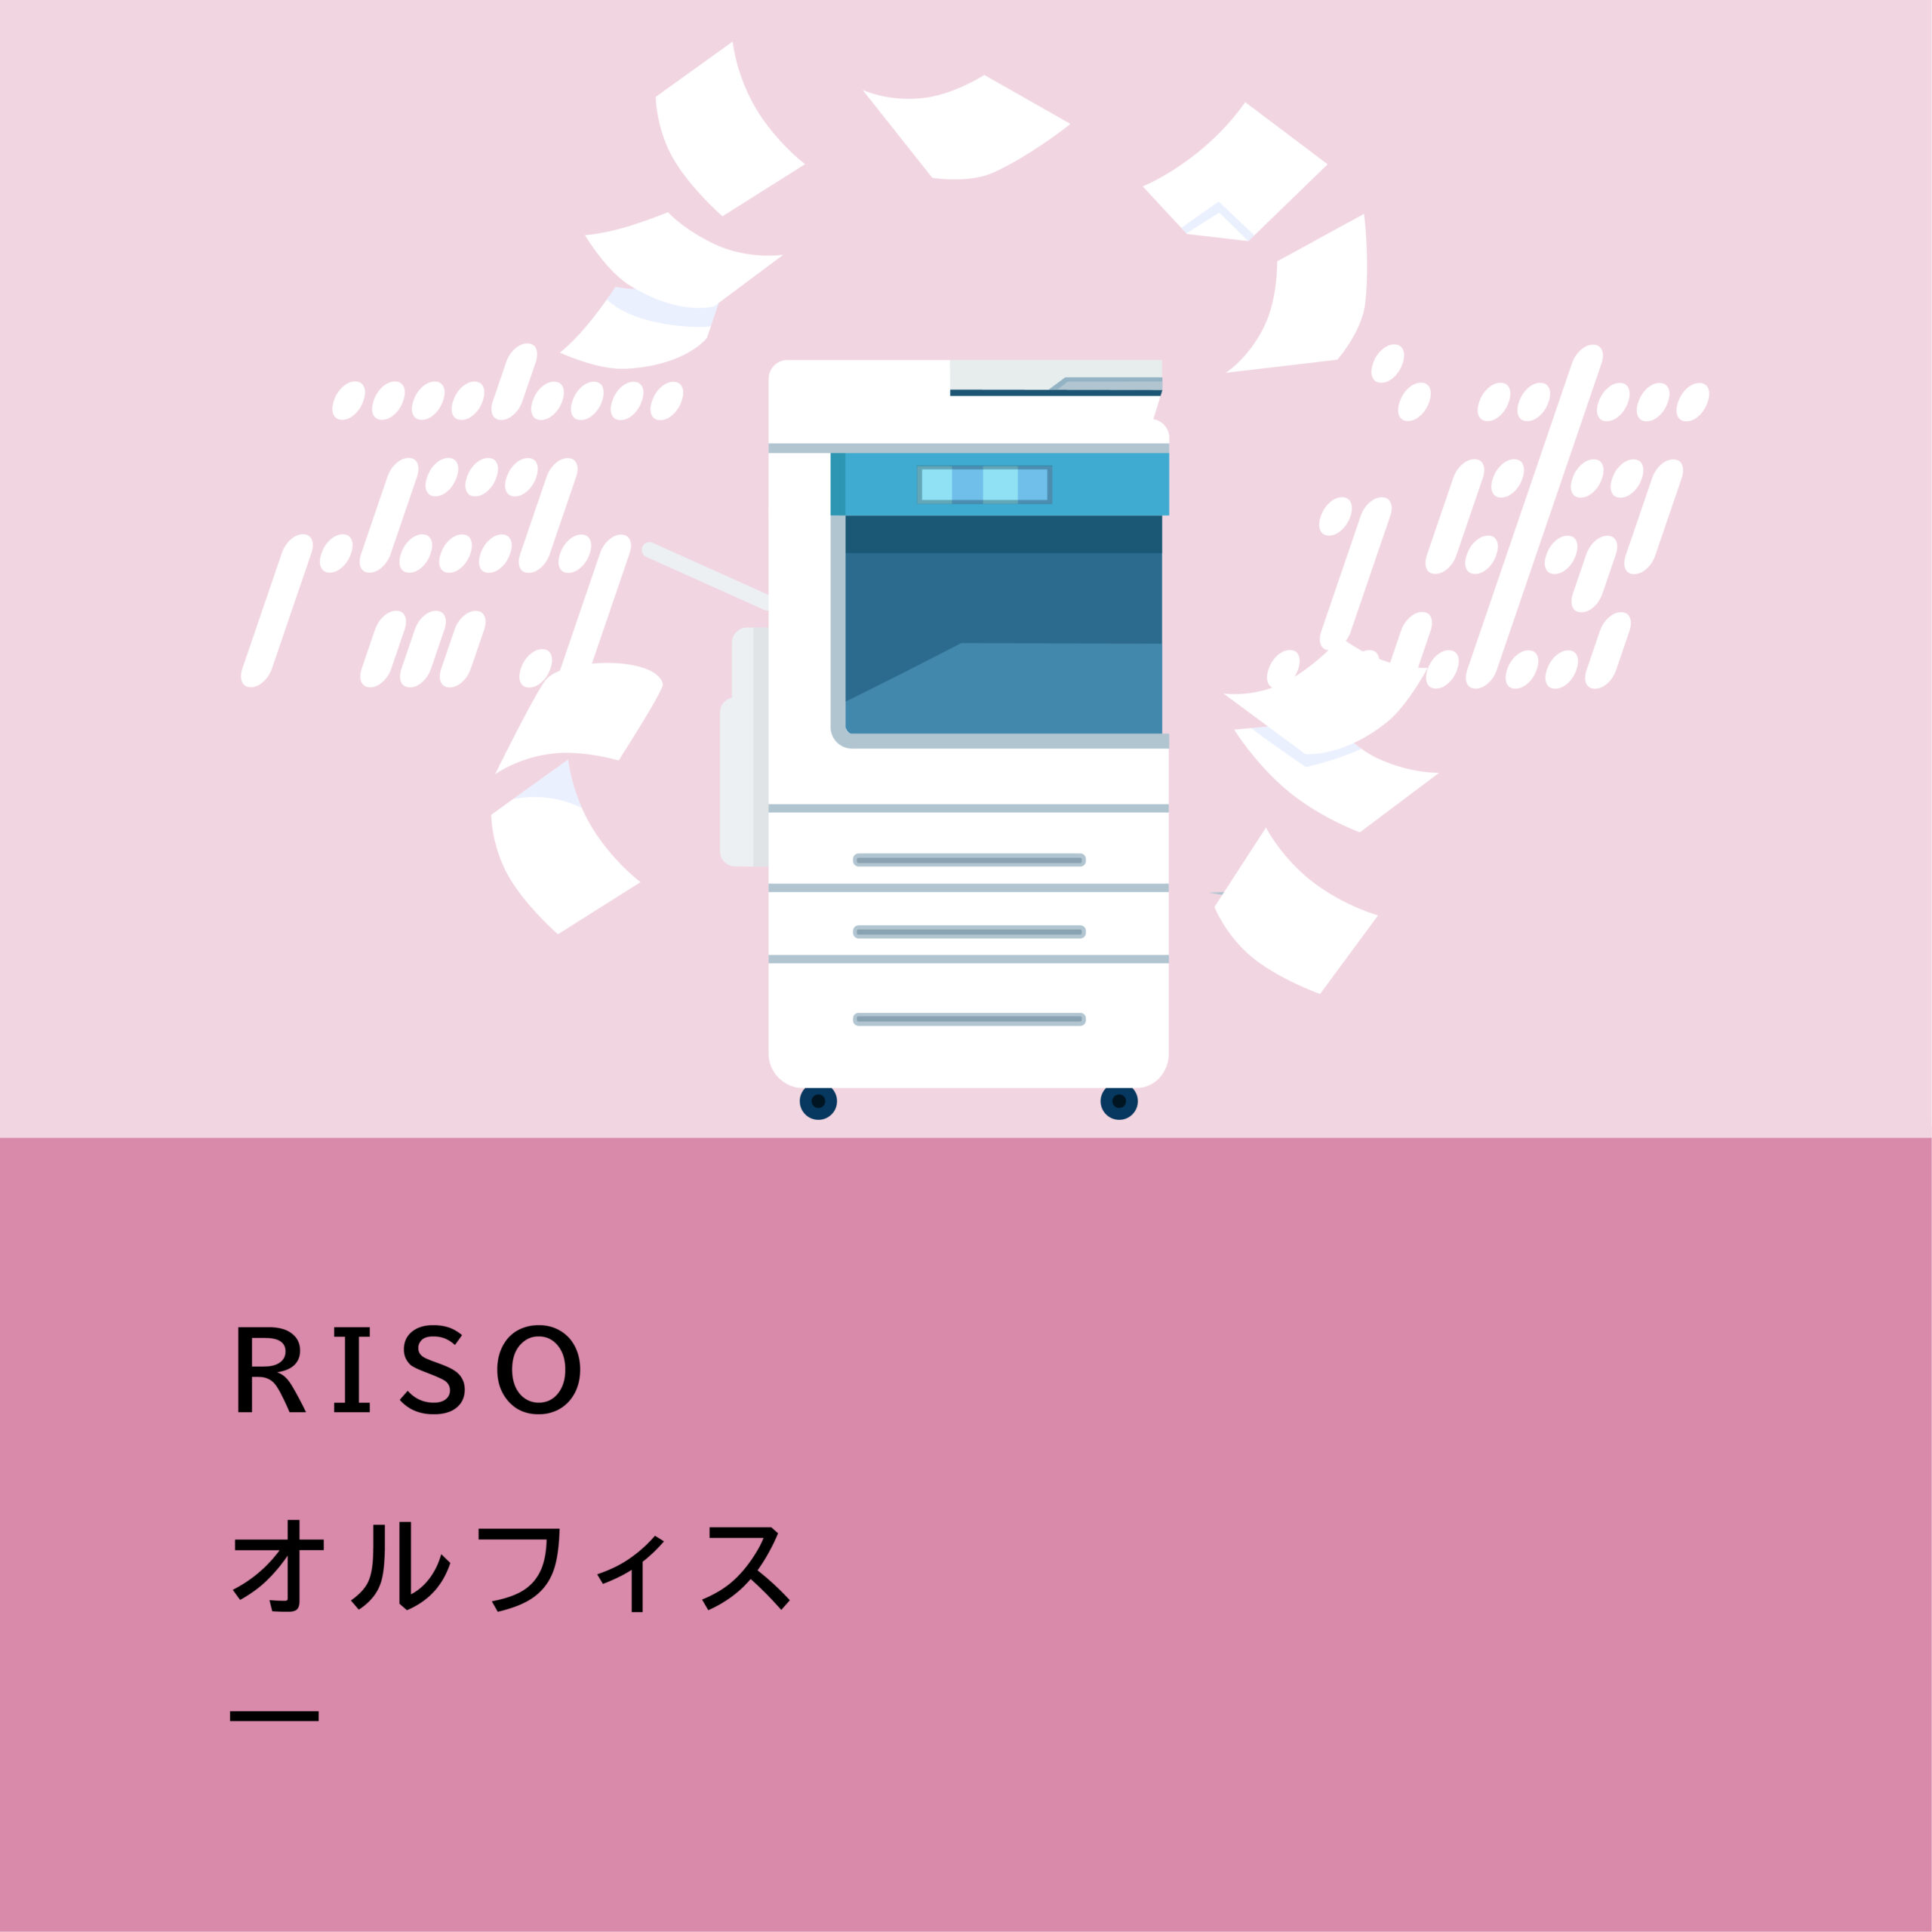 【商品紹介】RISO オルフィスGLシリーズ／世界最速プリンターでビジネスの効率と生産性を高める。